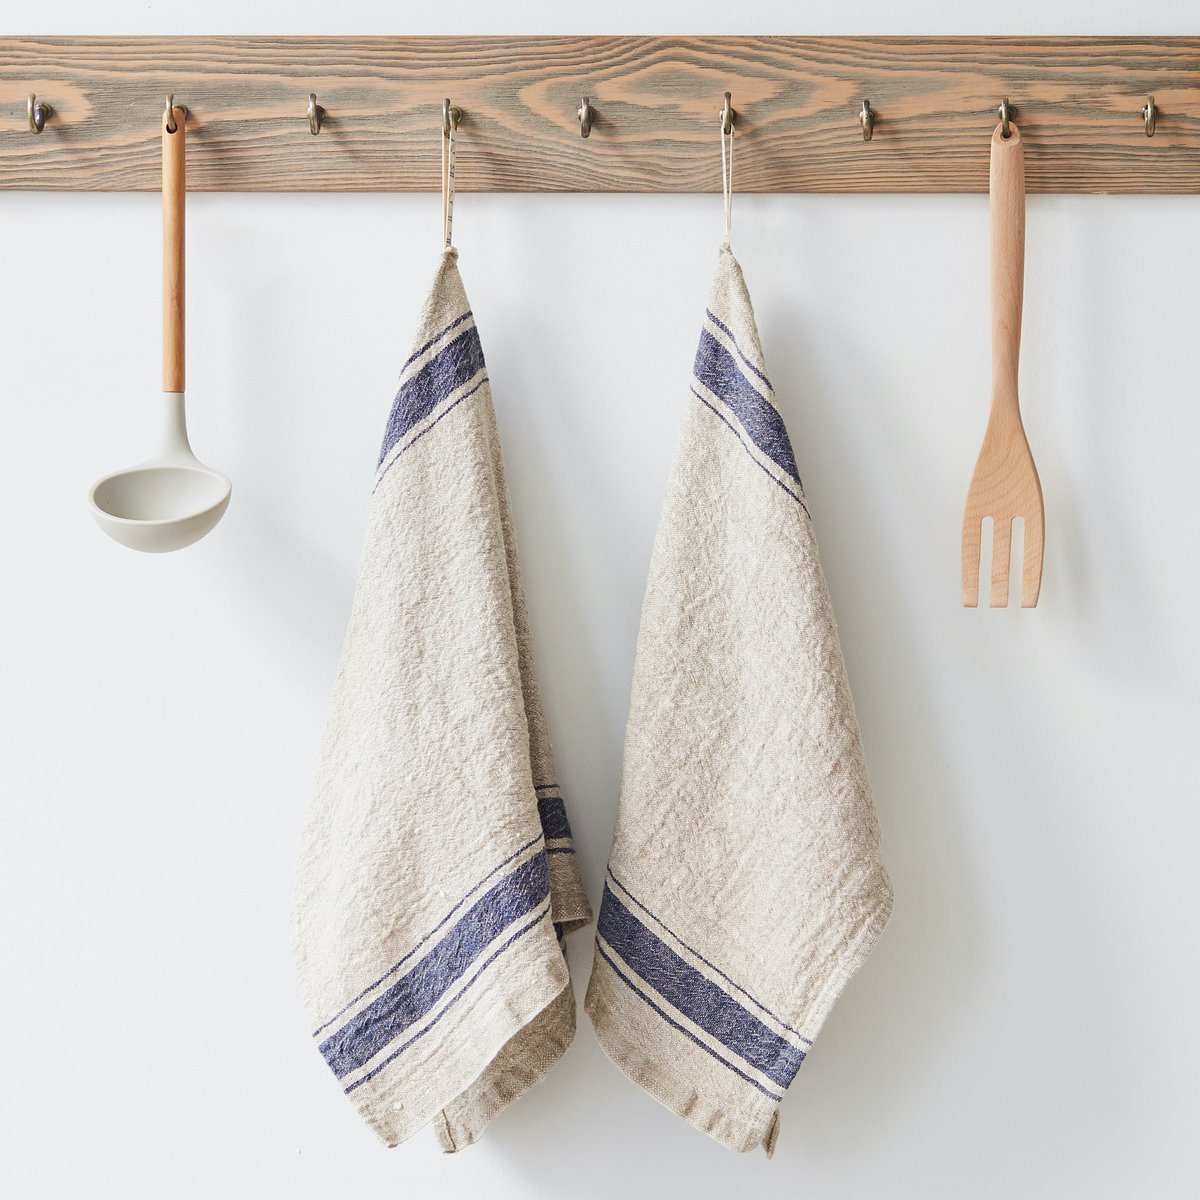 Zwei Küchentücher aus Leinen mit blauen Streifen hängen neben einer Kelle und einer Gabel an einem Holzbrett